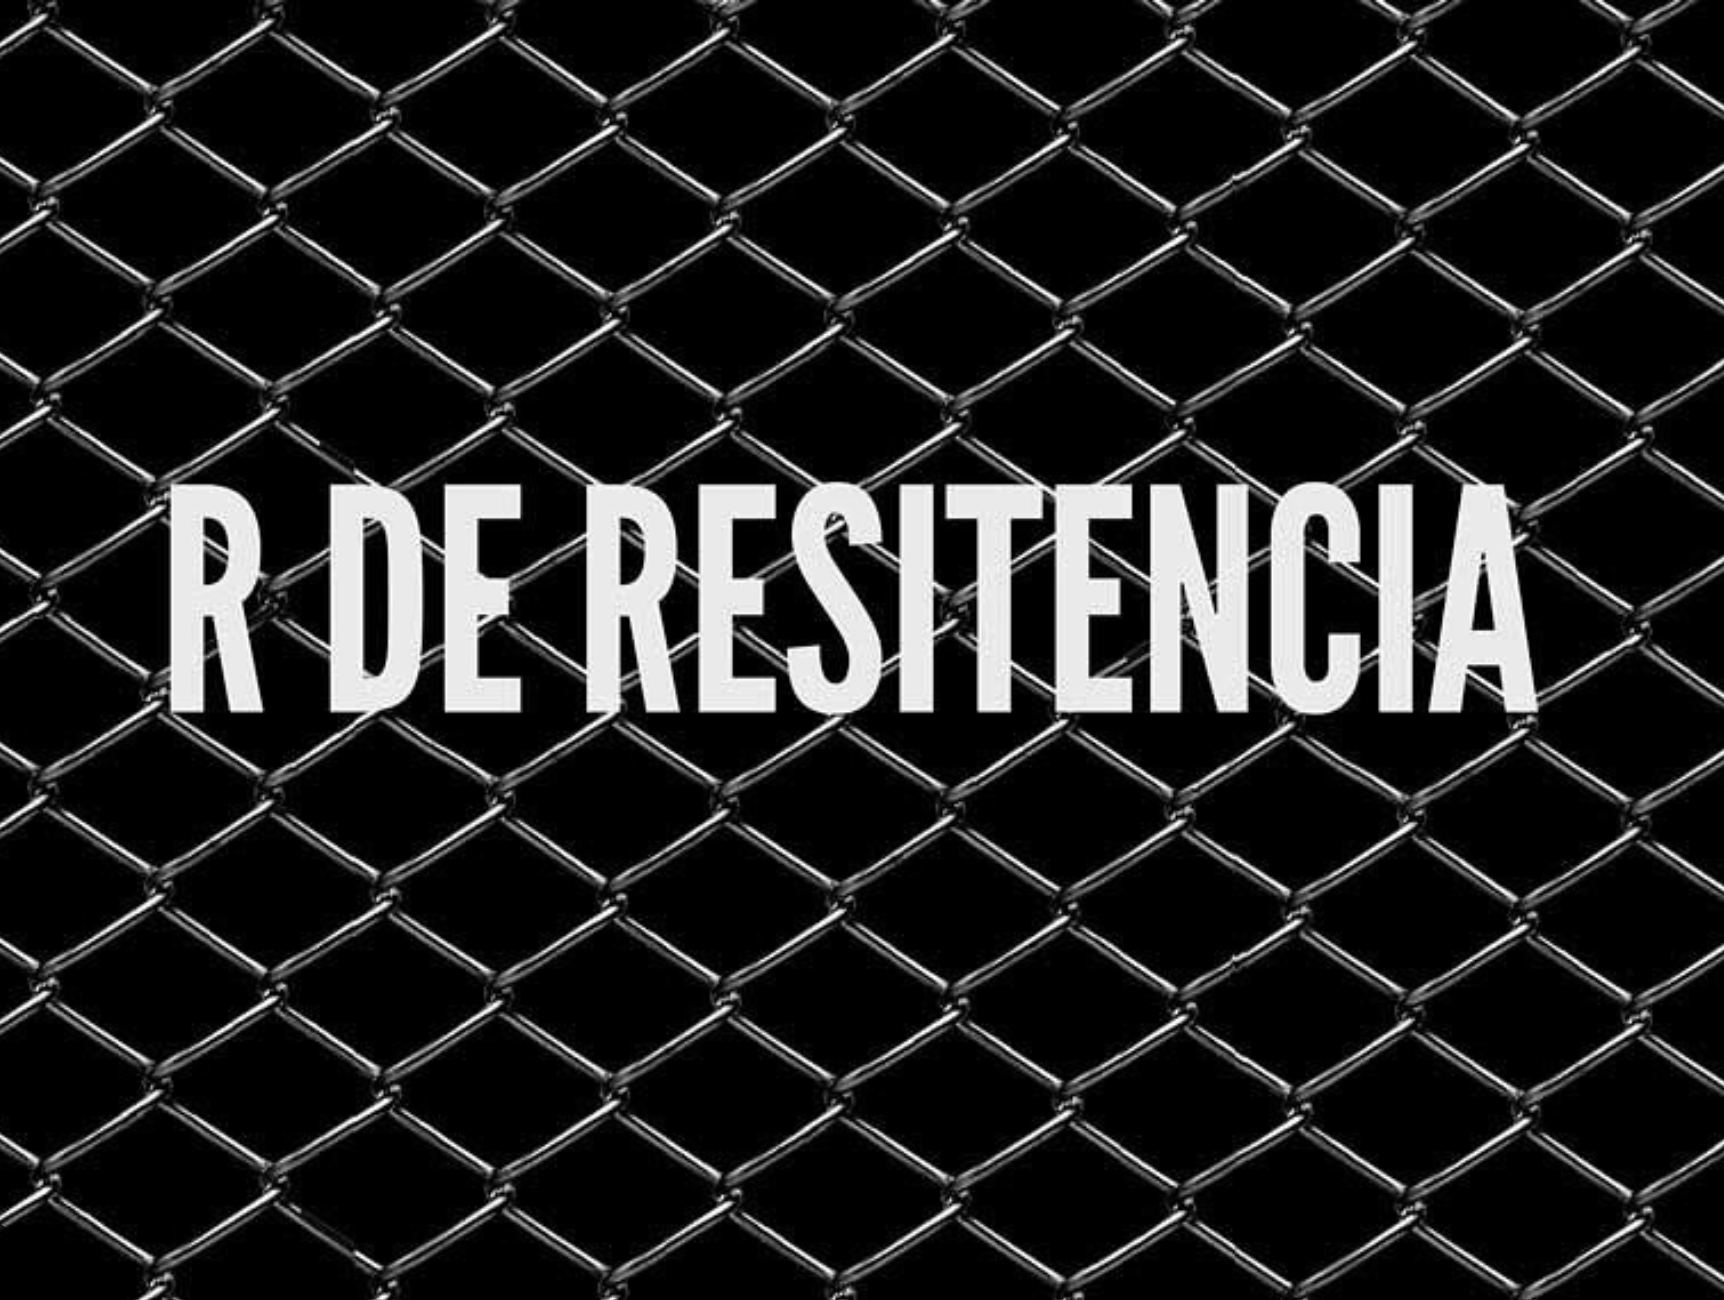 Inauguración de la exposición "R de Resistencia" de Ramón Mateos | Sala el Brocense, Cáceres